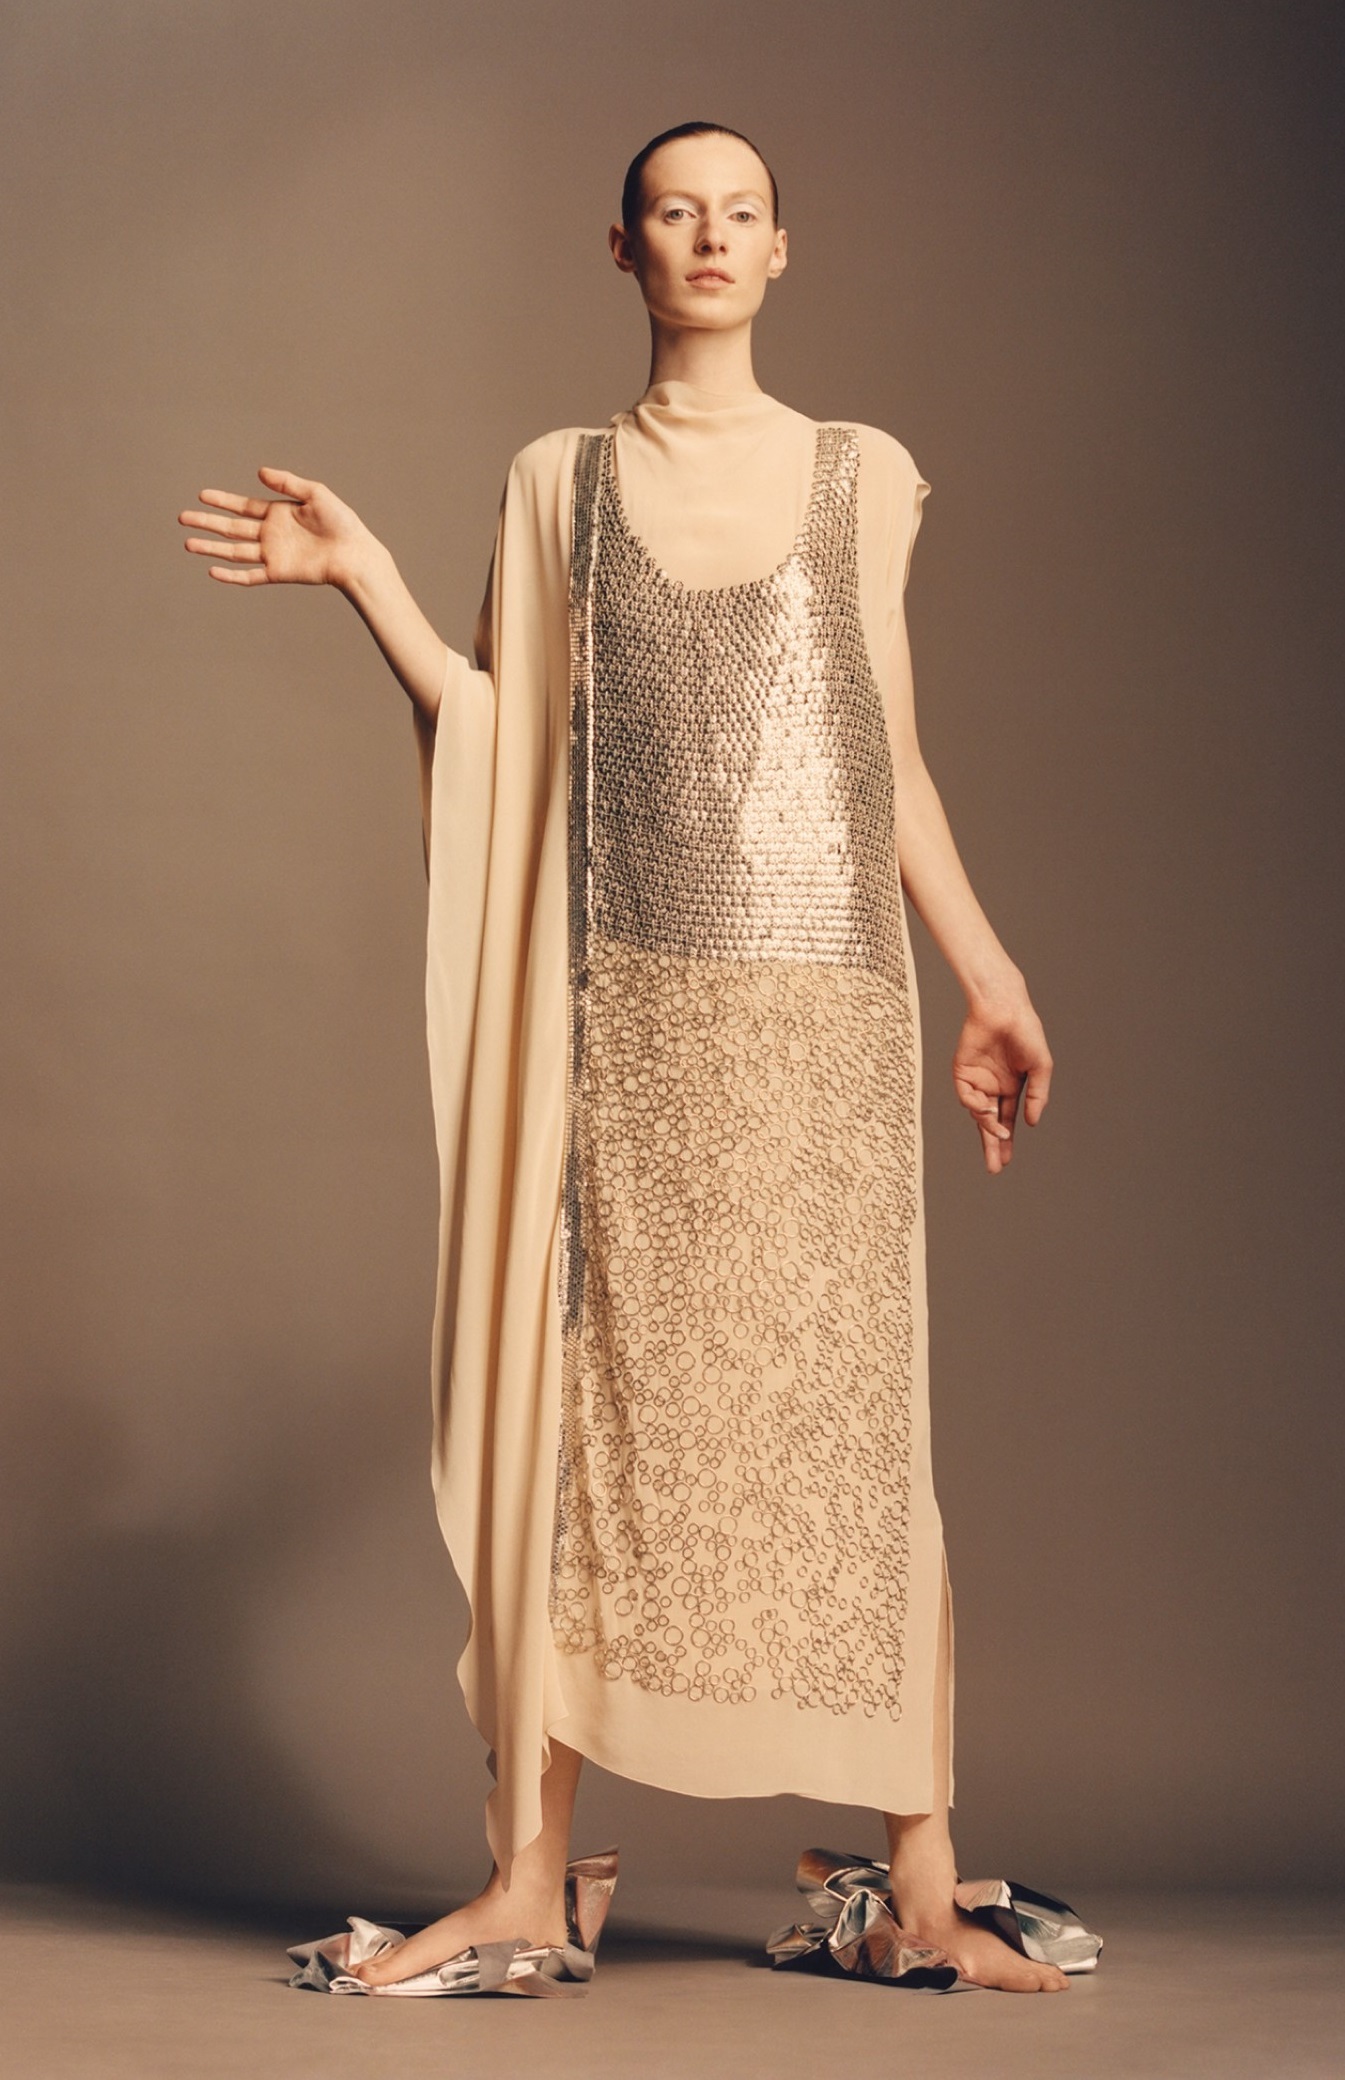 Vestido color nude con aplicaciones metálicas, de Zara Atelier.